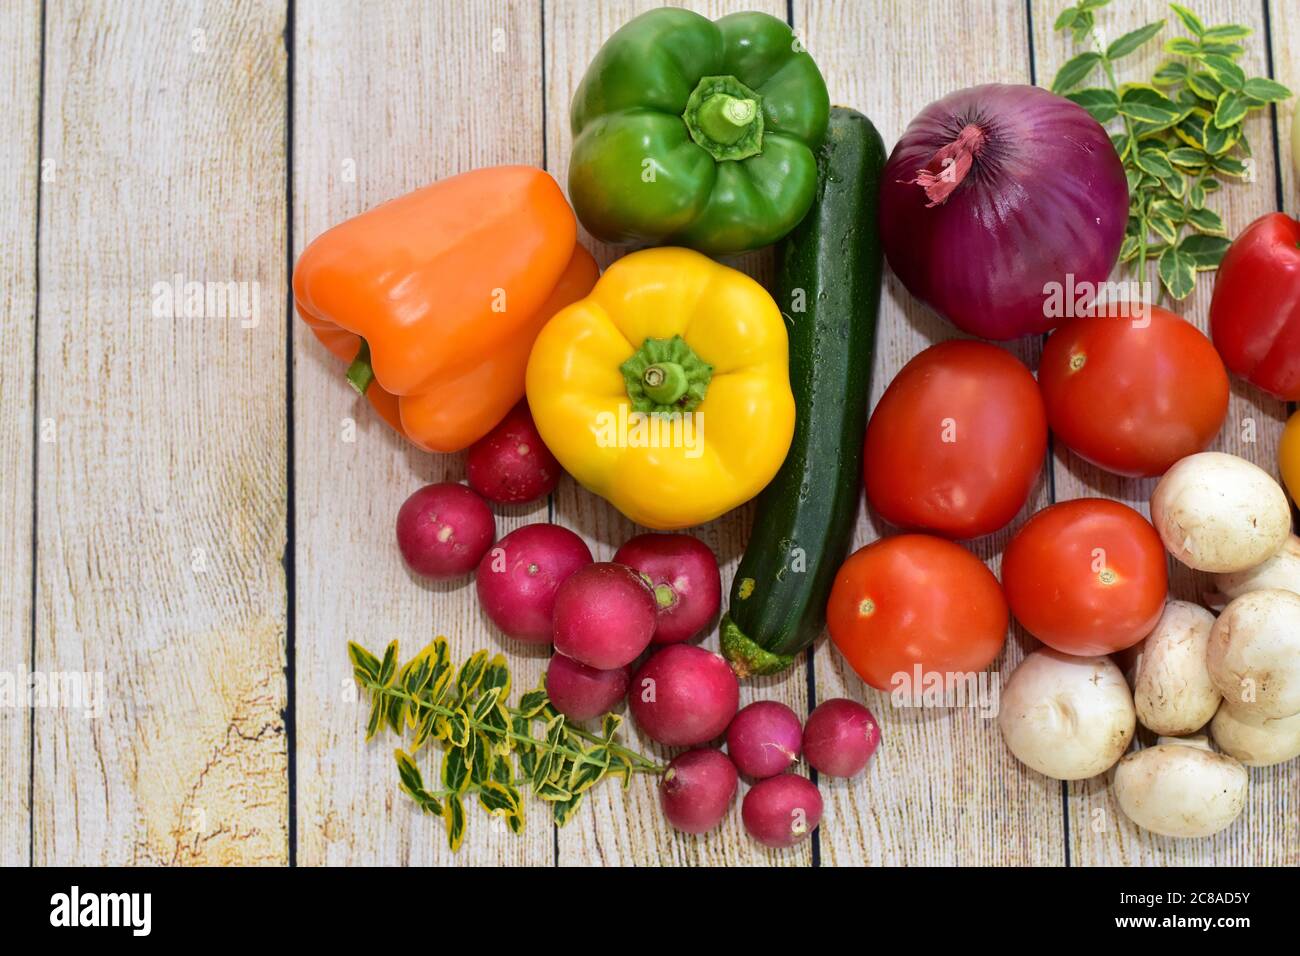 Légumes frais et fleurs récoltés biologiques sur table en bois dans un arrangement artistique pour encourager des repas sains Banque D'Images